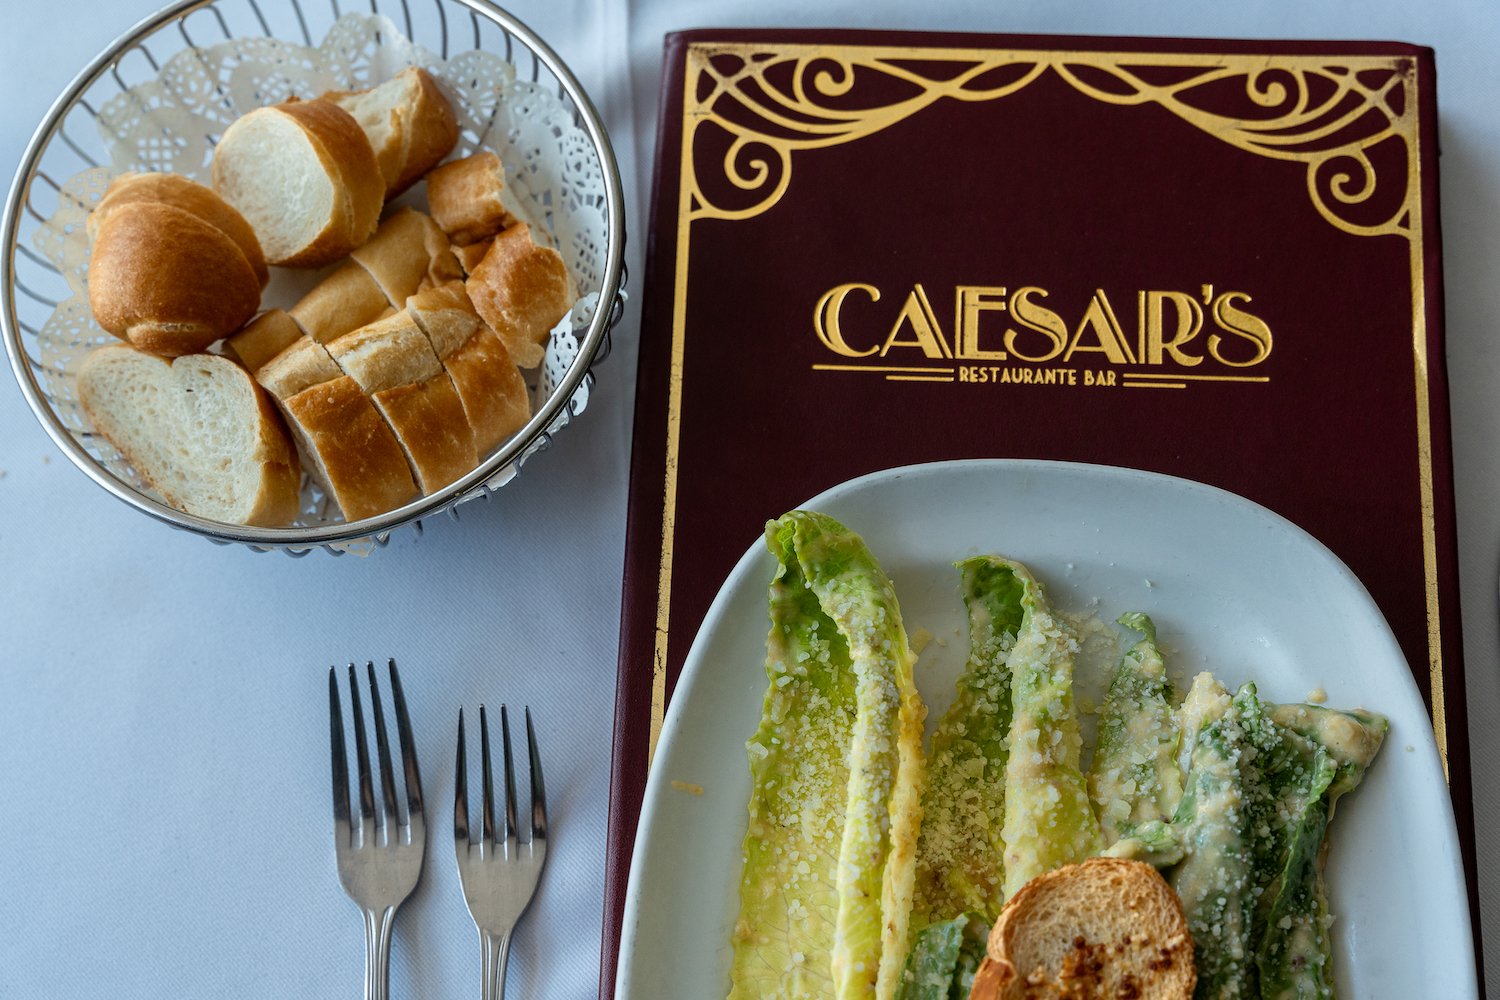 Caesar salad in Mexico